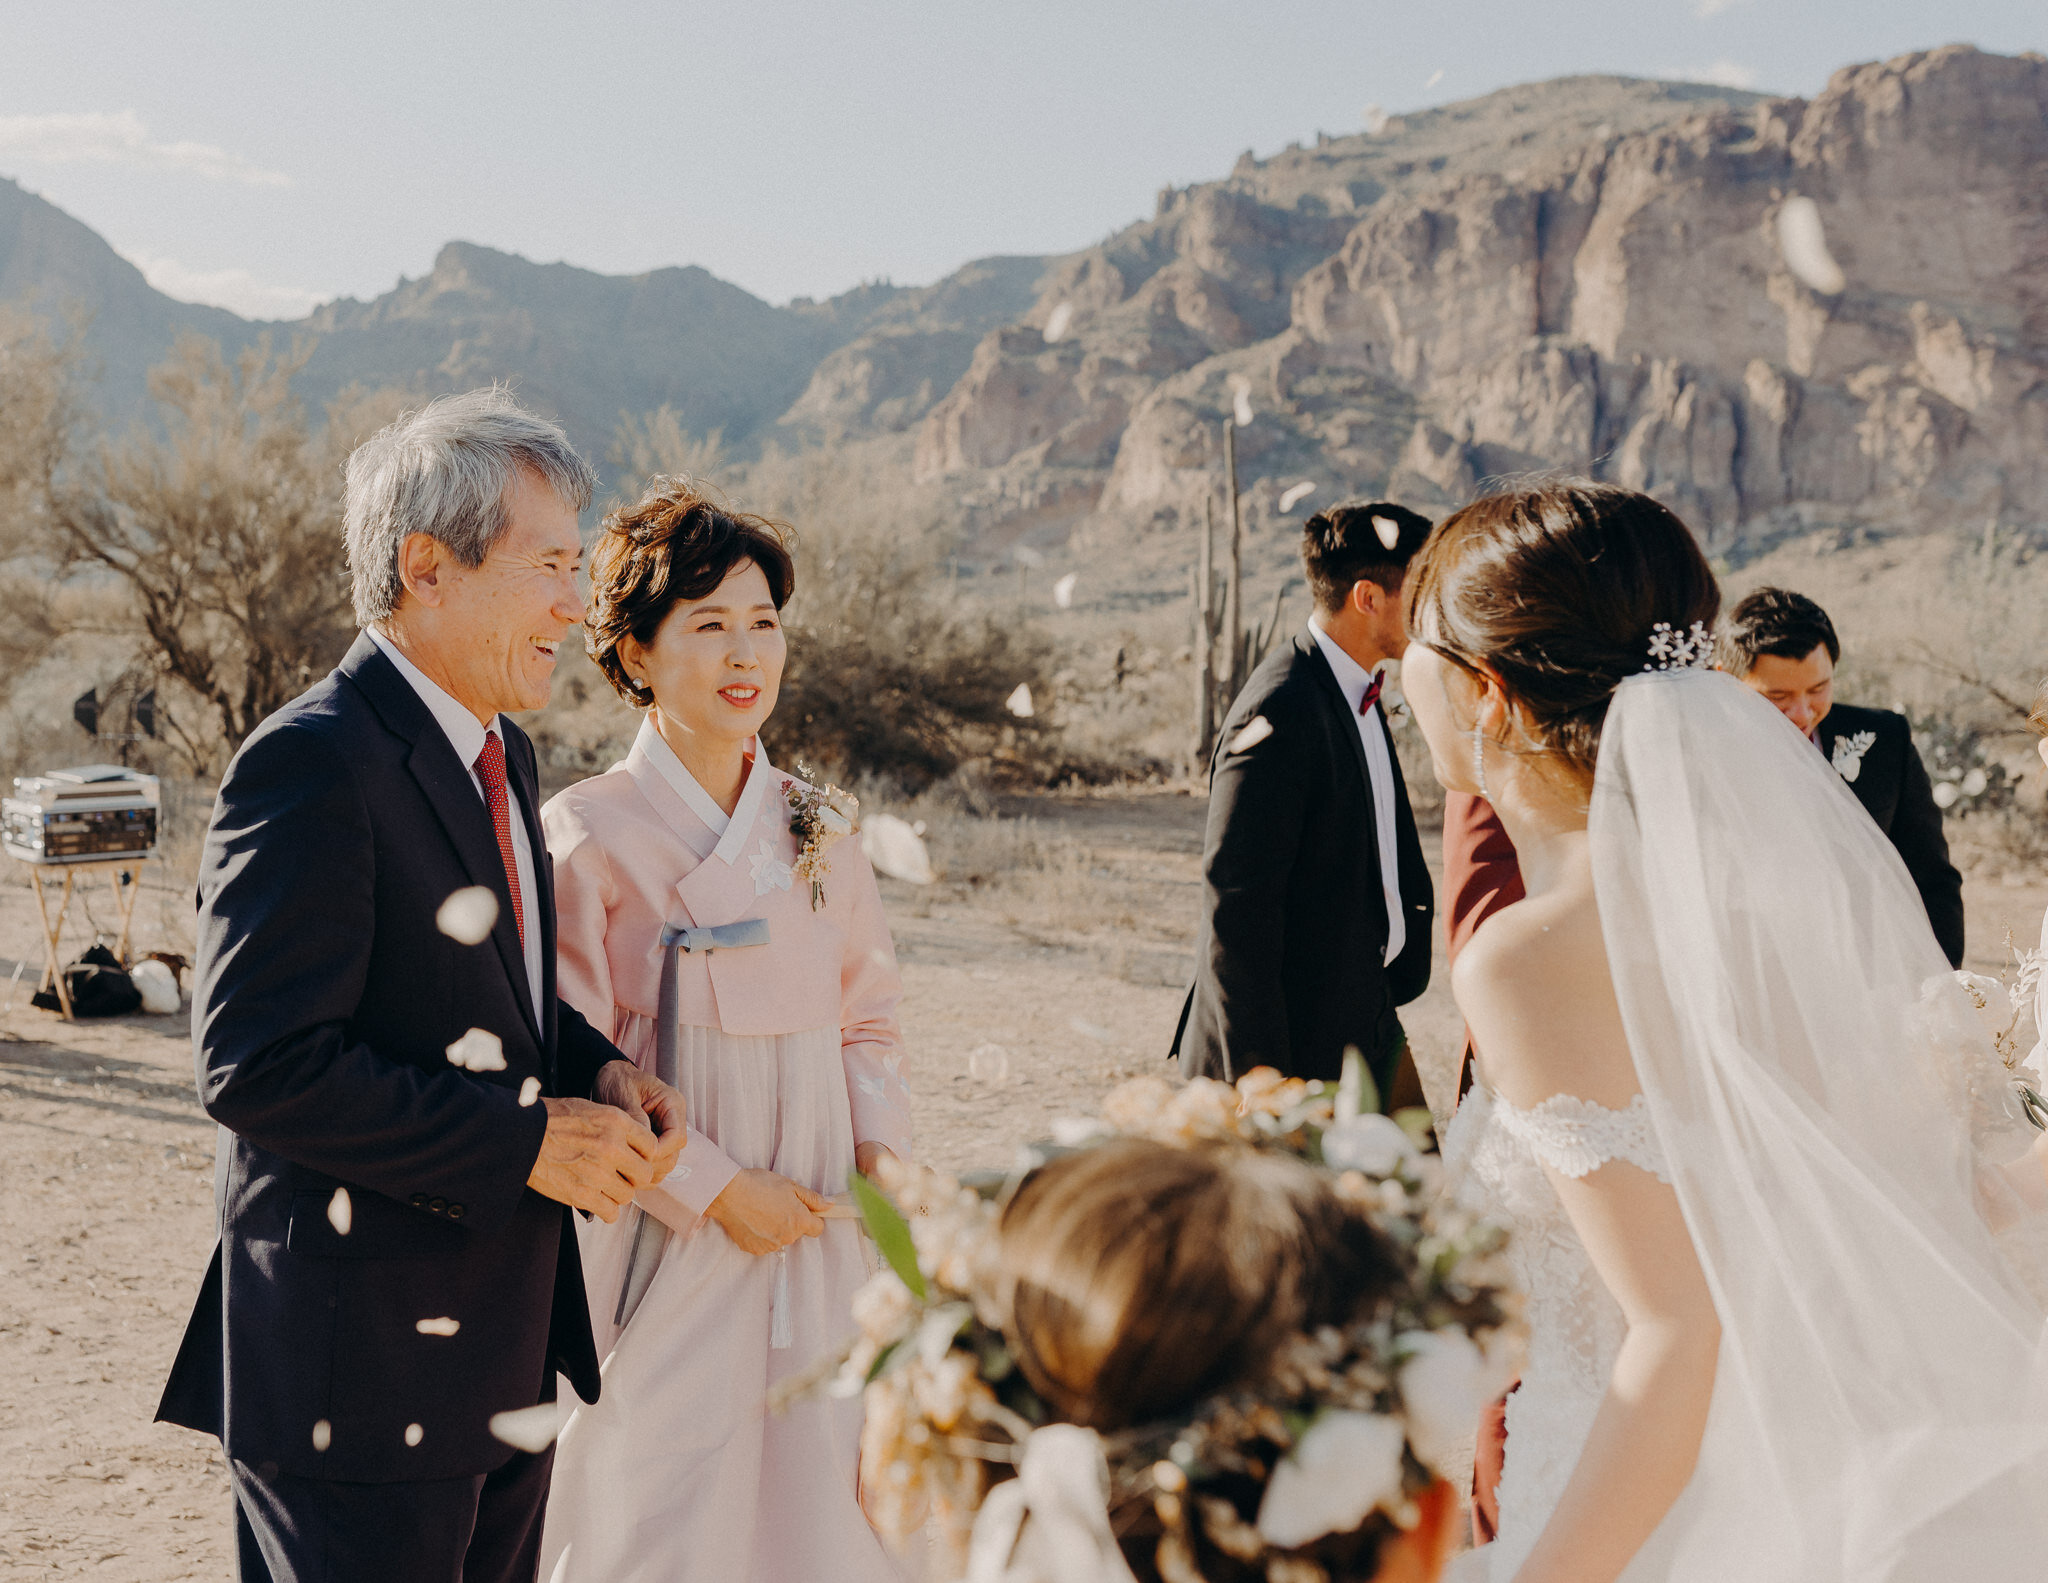 california wedding photograhers - desert elopement - supersition mountains - isaiahandtaylor.com-78.jpg